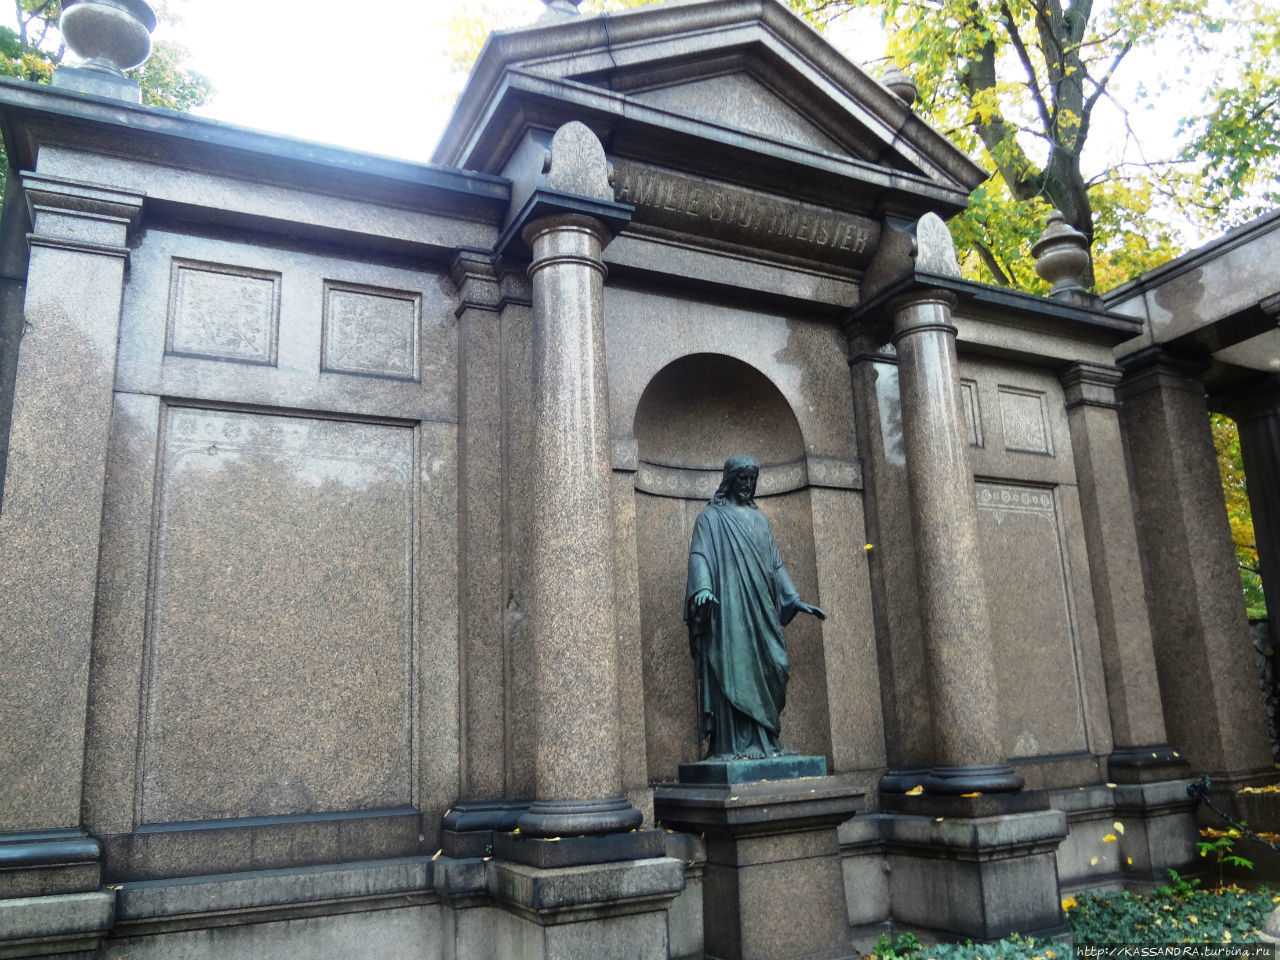 Квартал Доротеенштадт в Берлине.  Доротеенштадтское кладбище